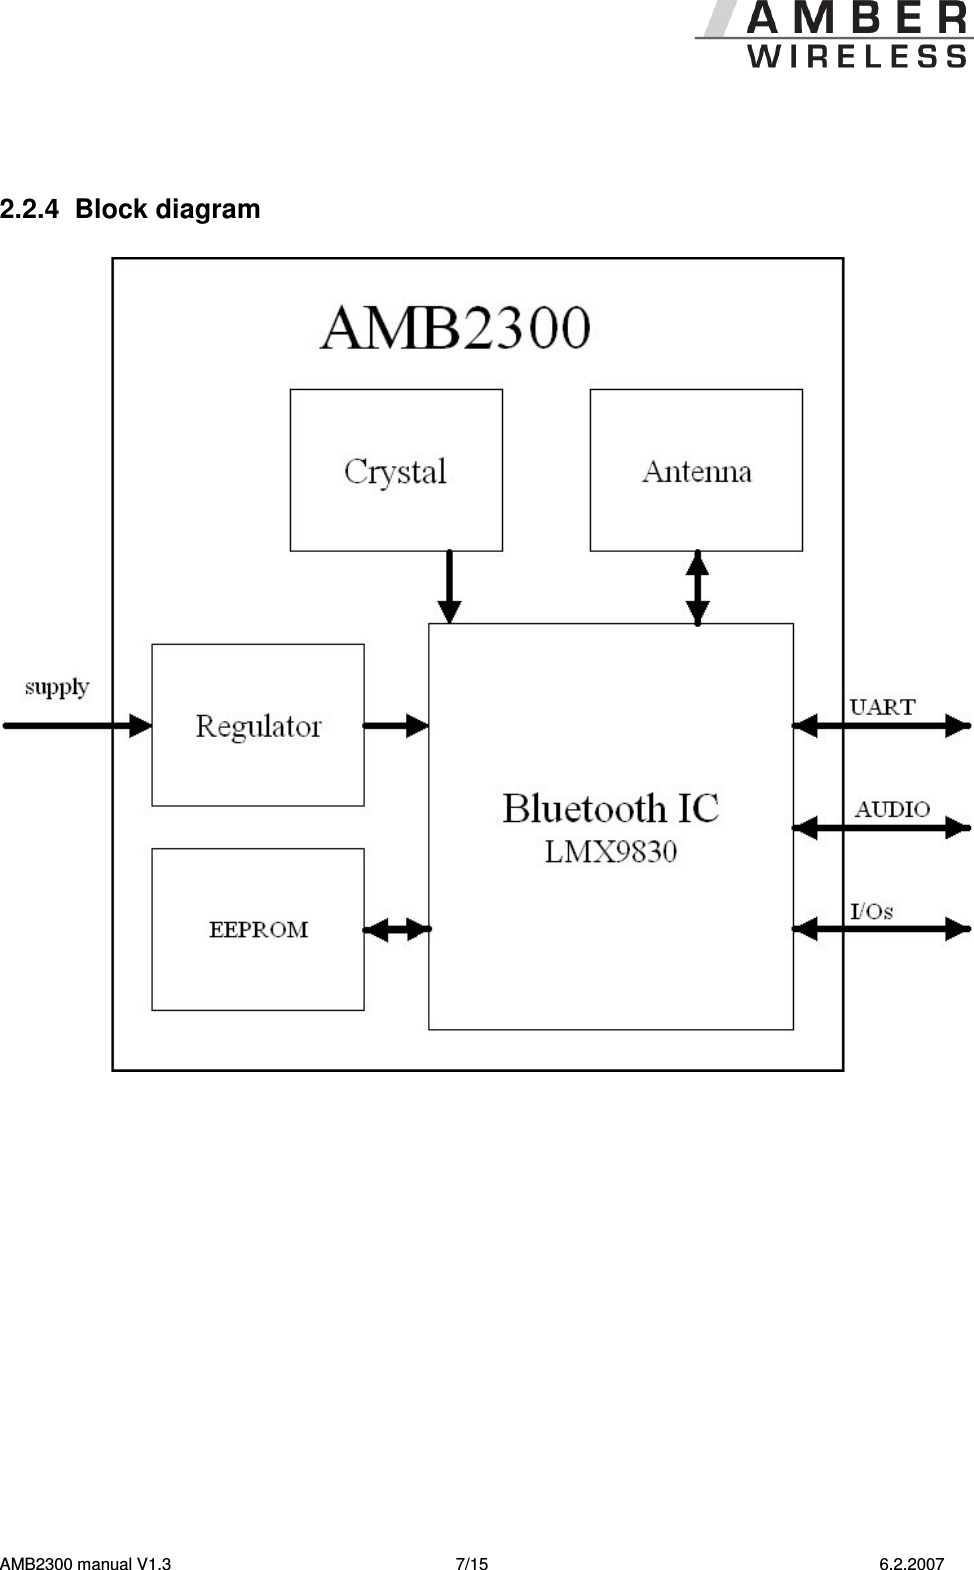   AMB2300 manual V1.3  7/15  6.2.2007   2.2.4  Block diagram     